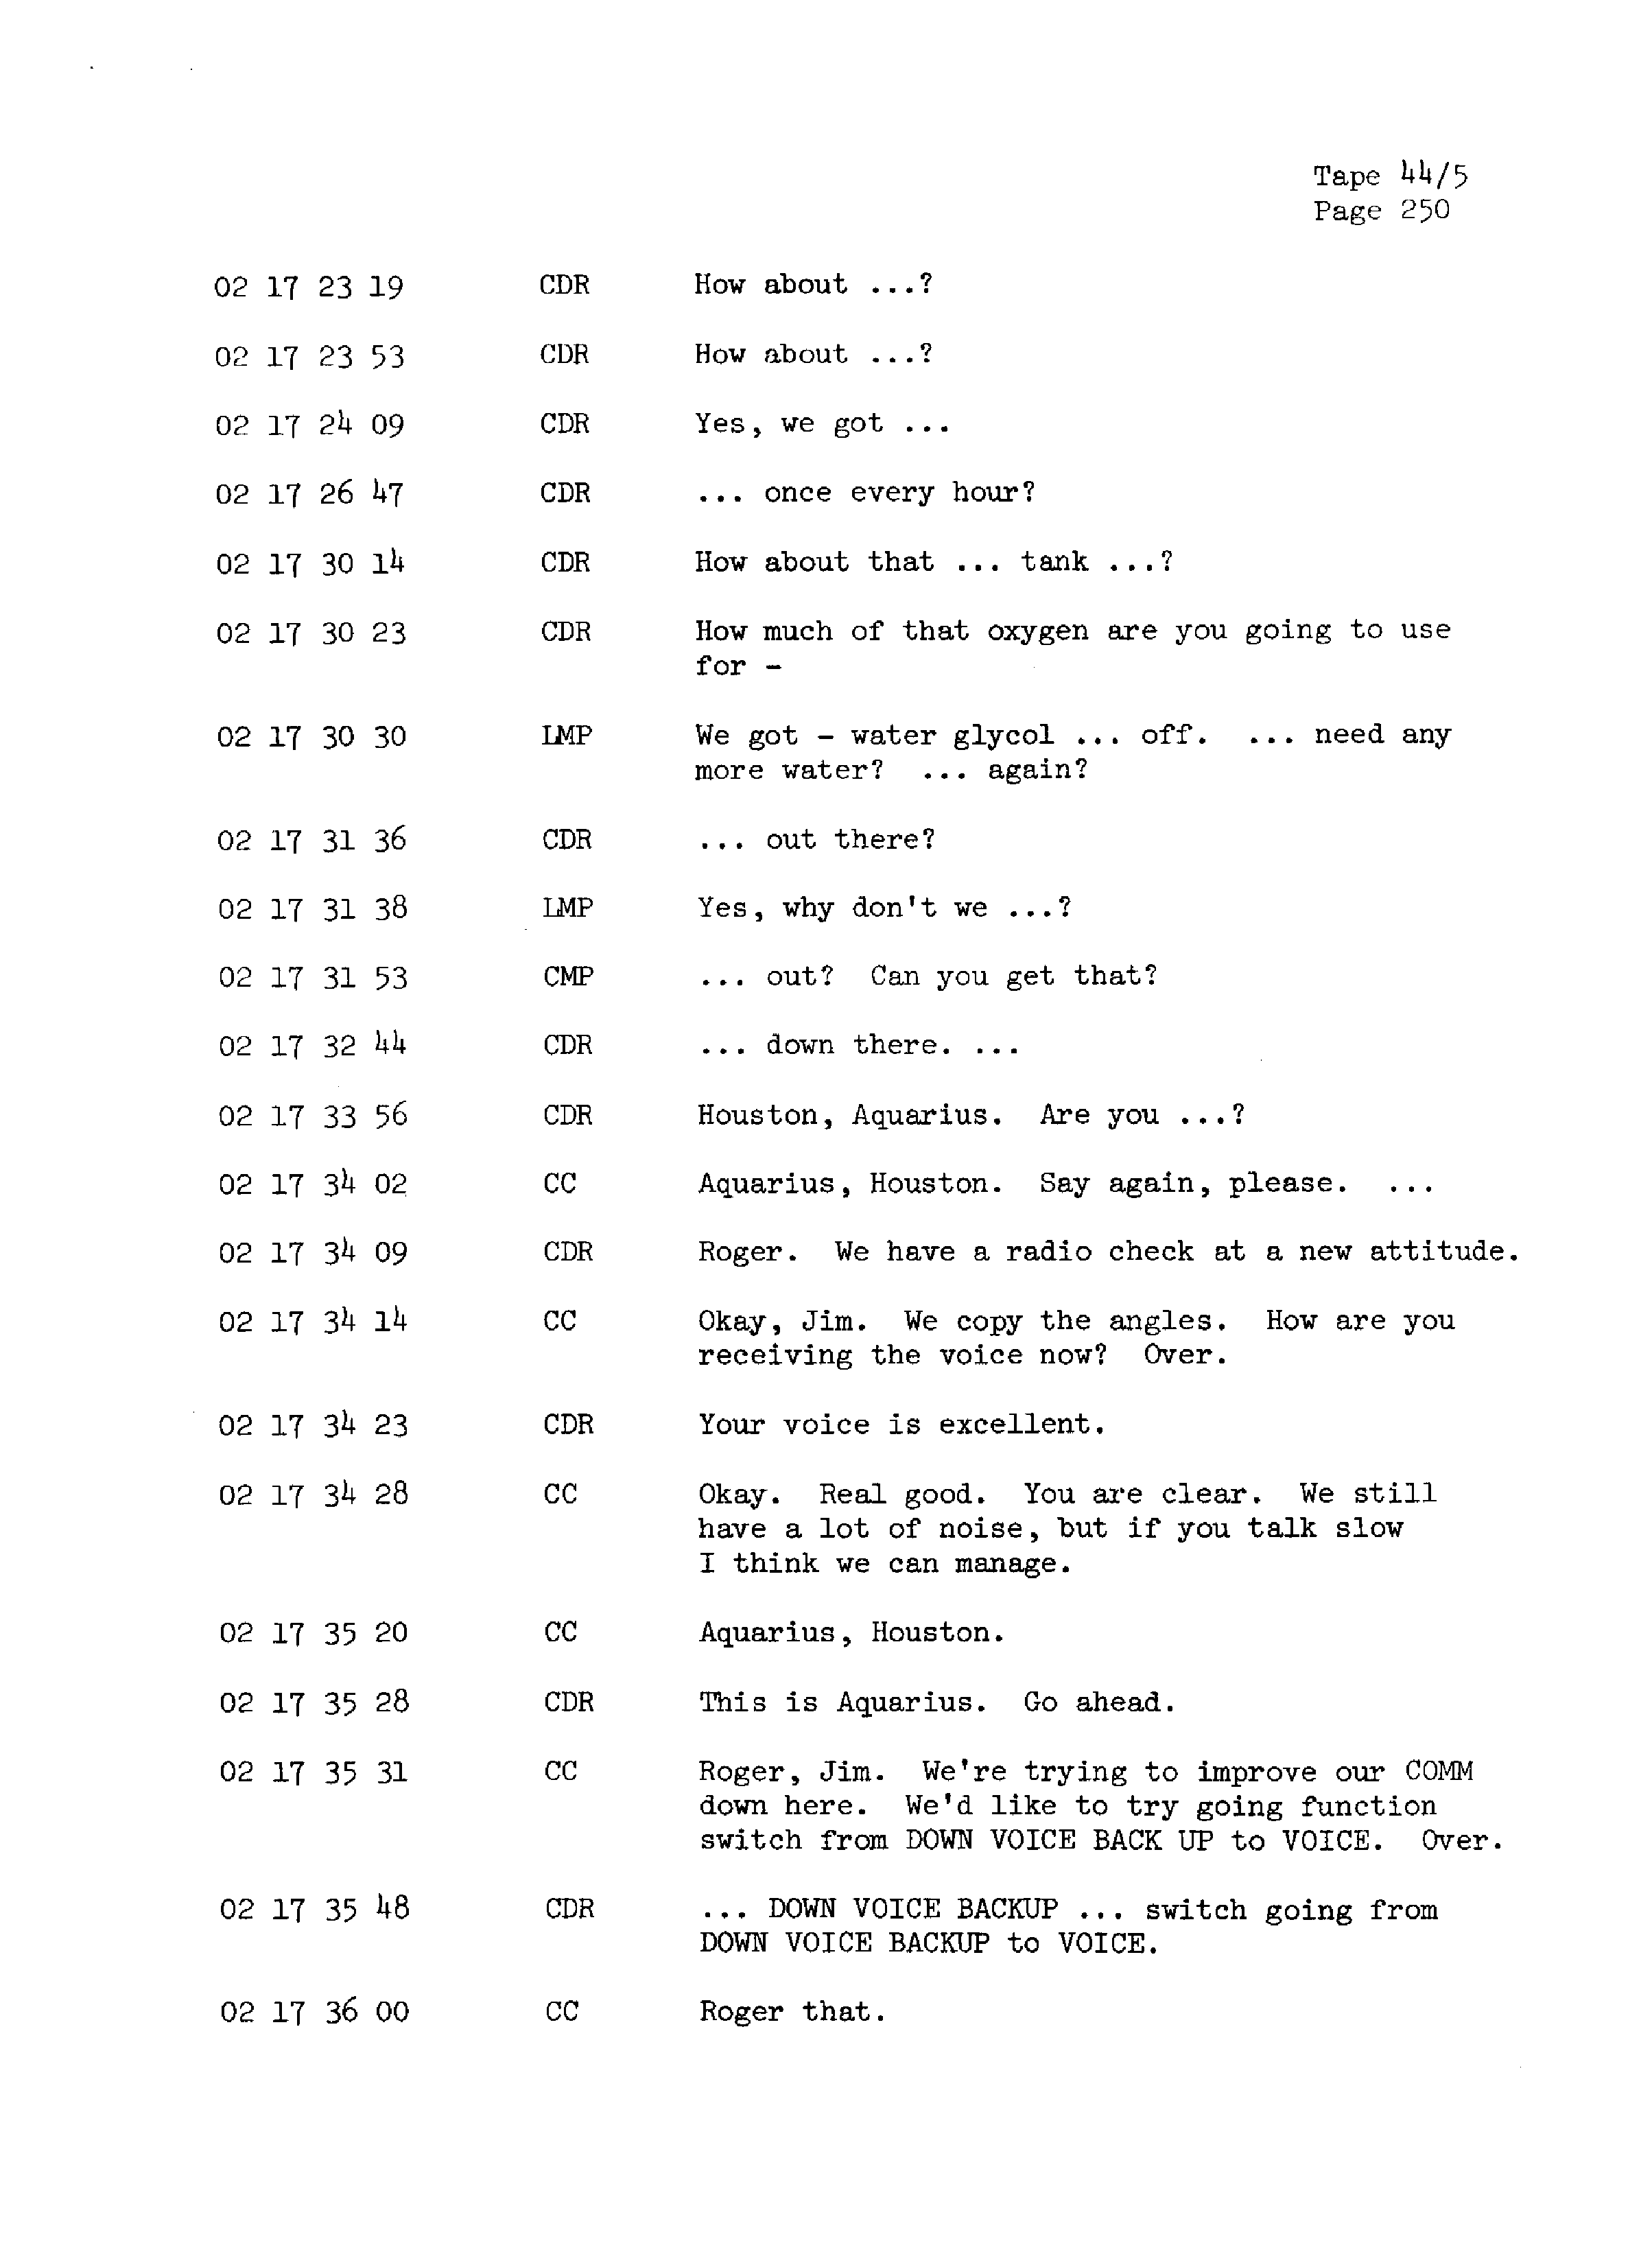 Page 257 of Apollo 13’s original transcript